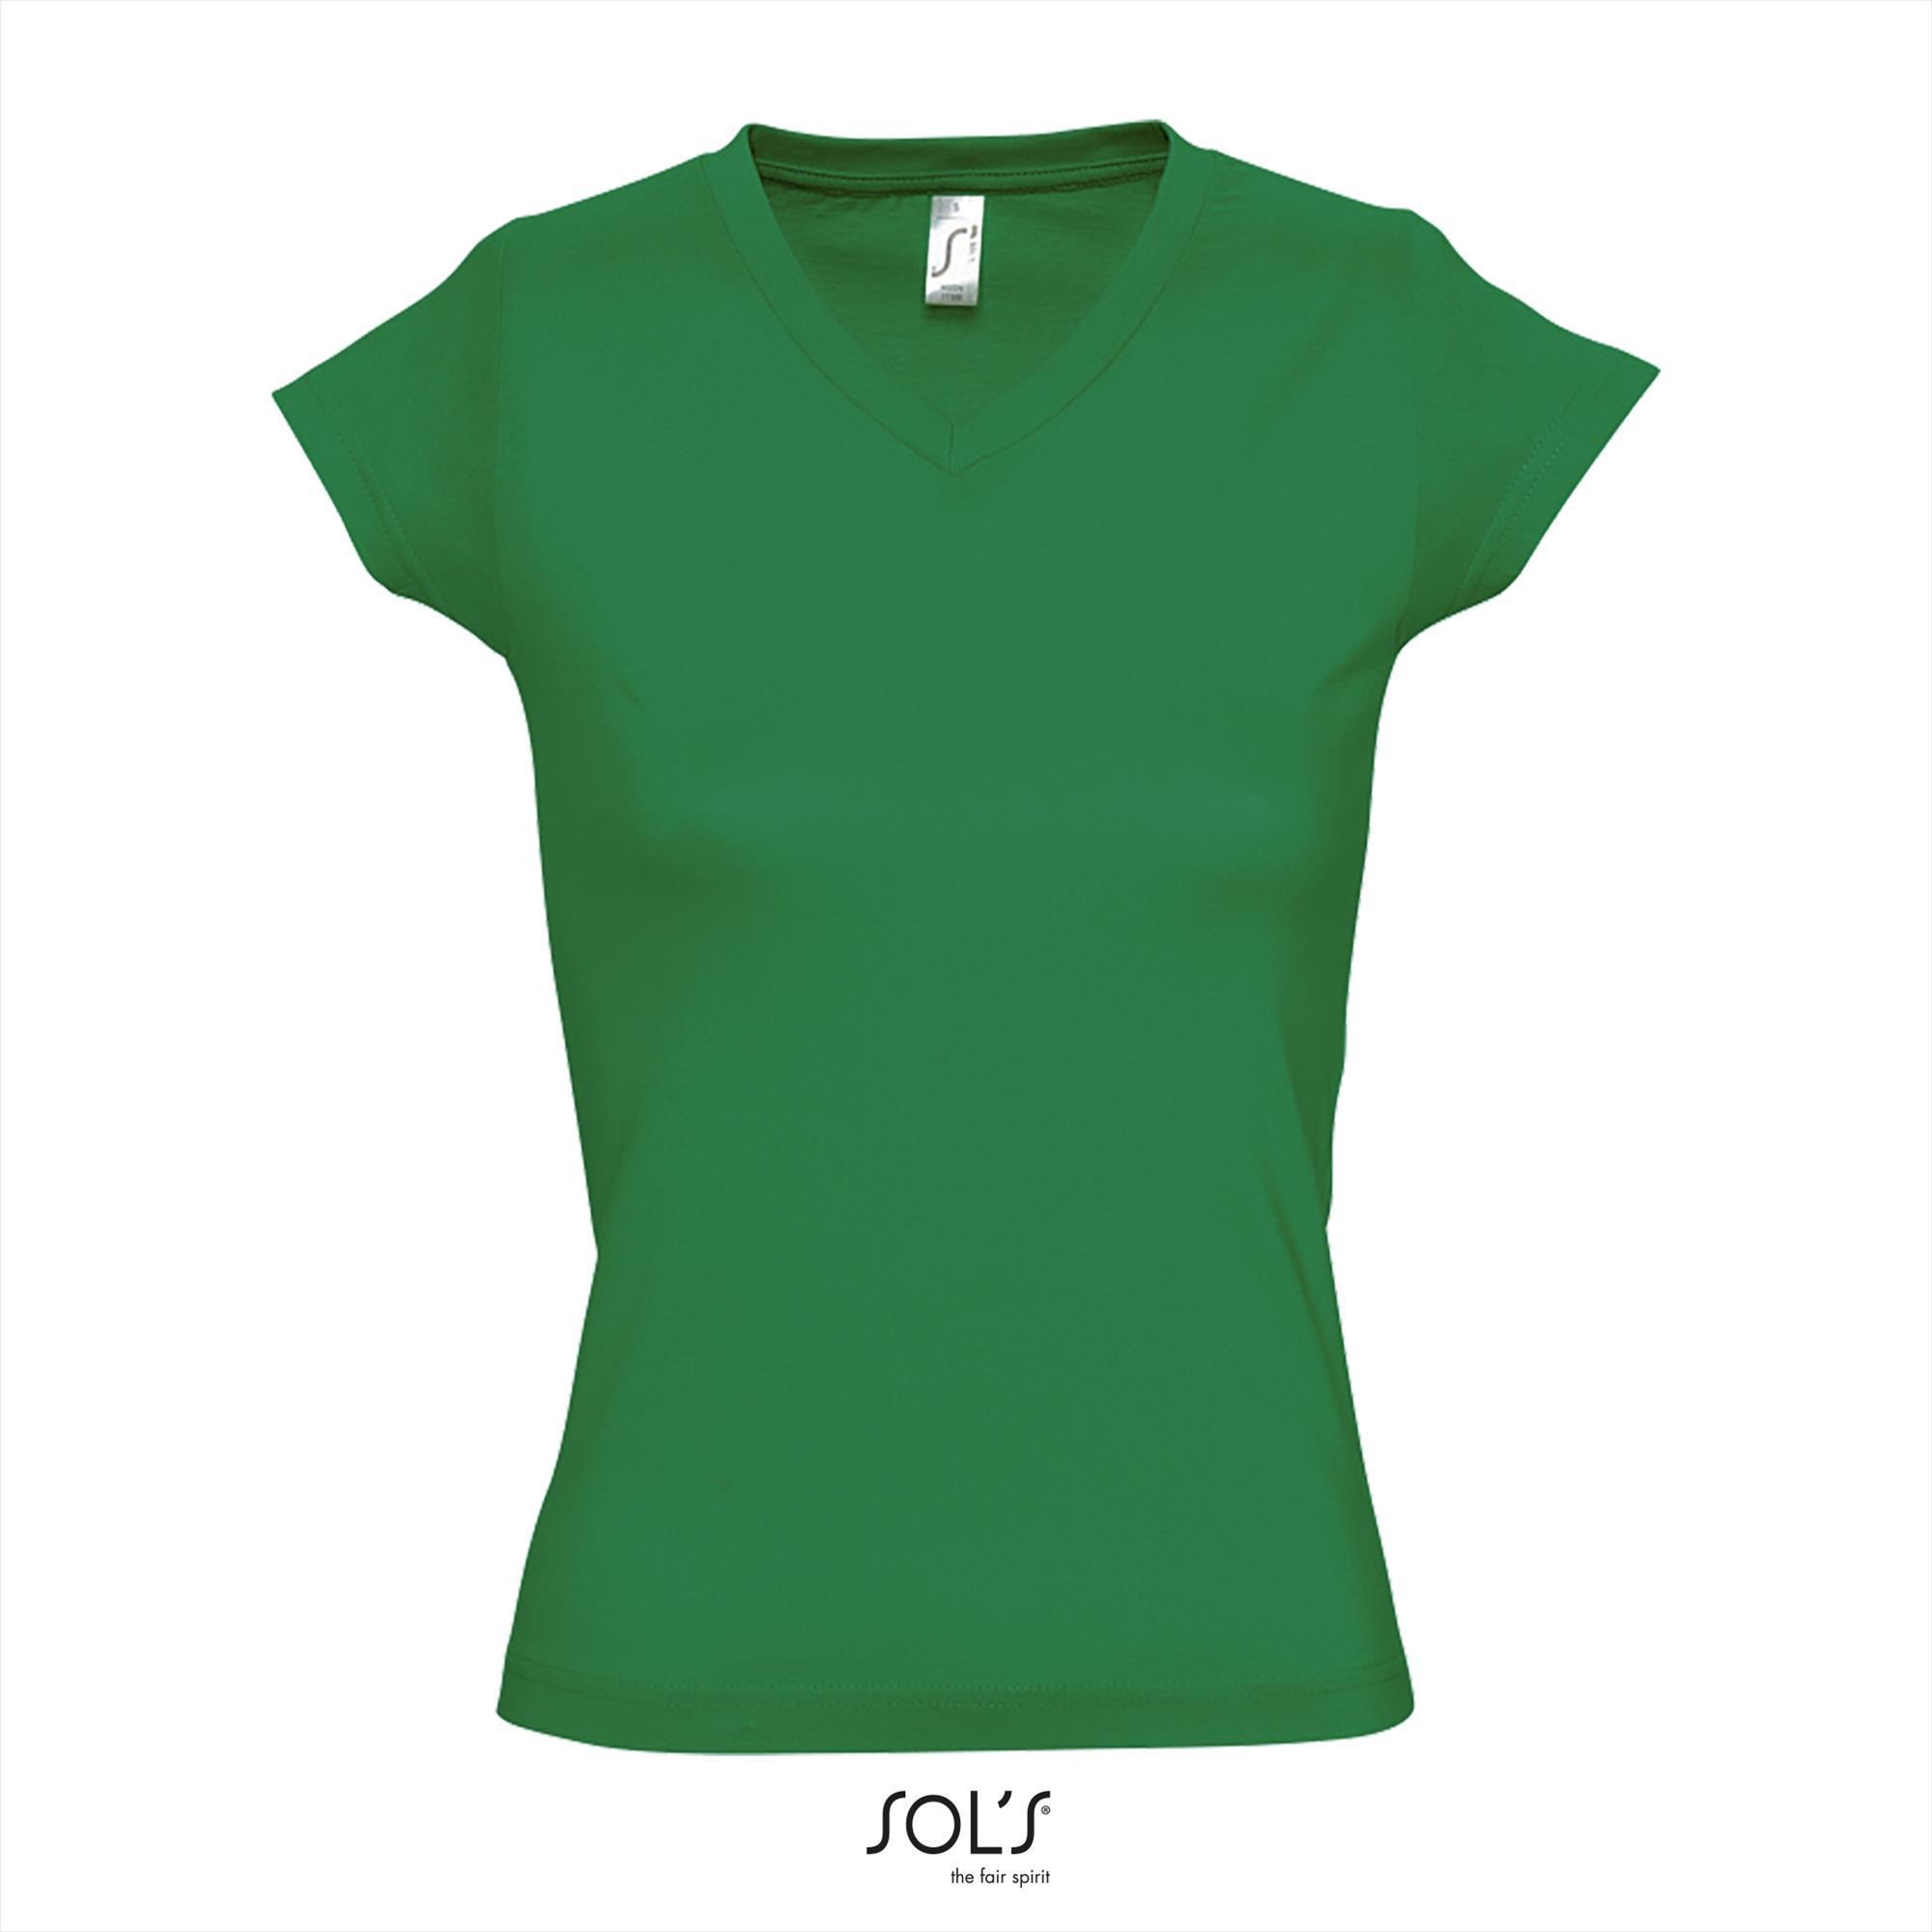 Modieus vrouwelijk dames T-shirt met een diepe V-neck Diepe V-hals T-shirt kelly green groen